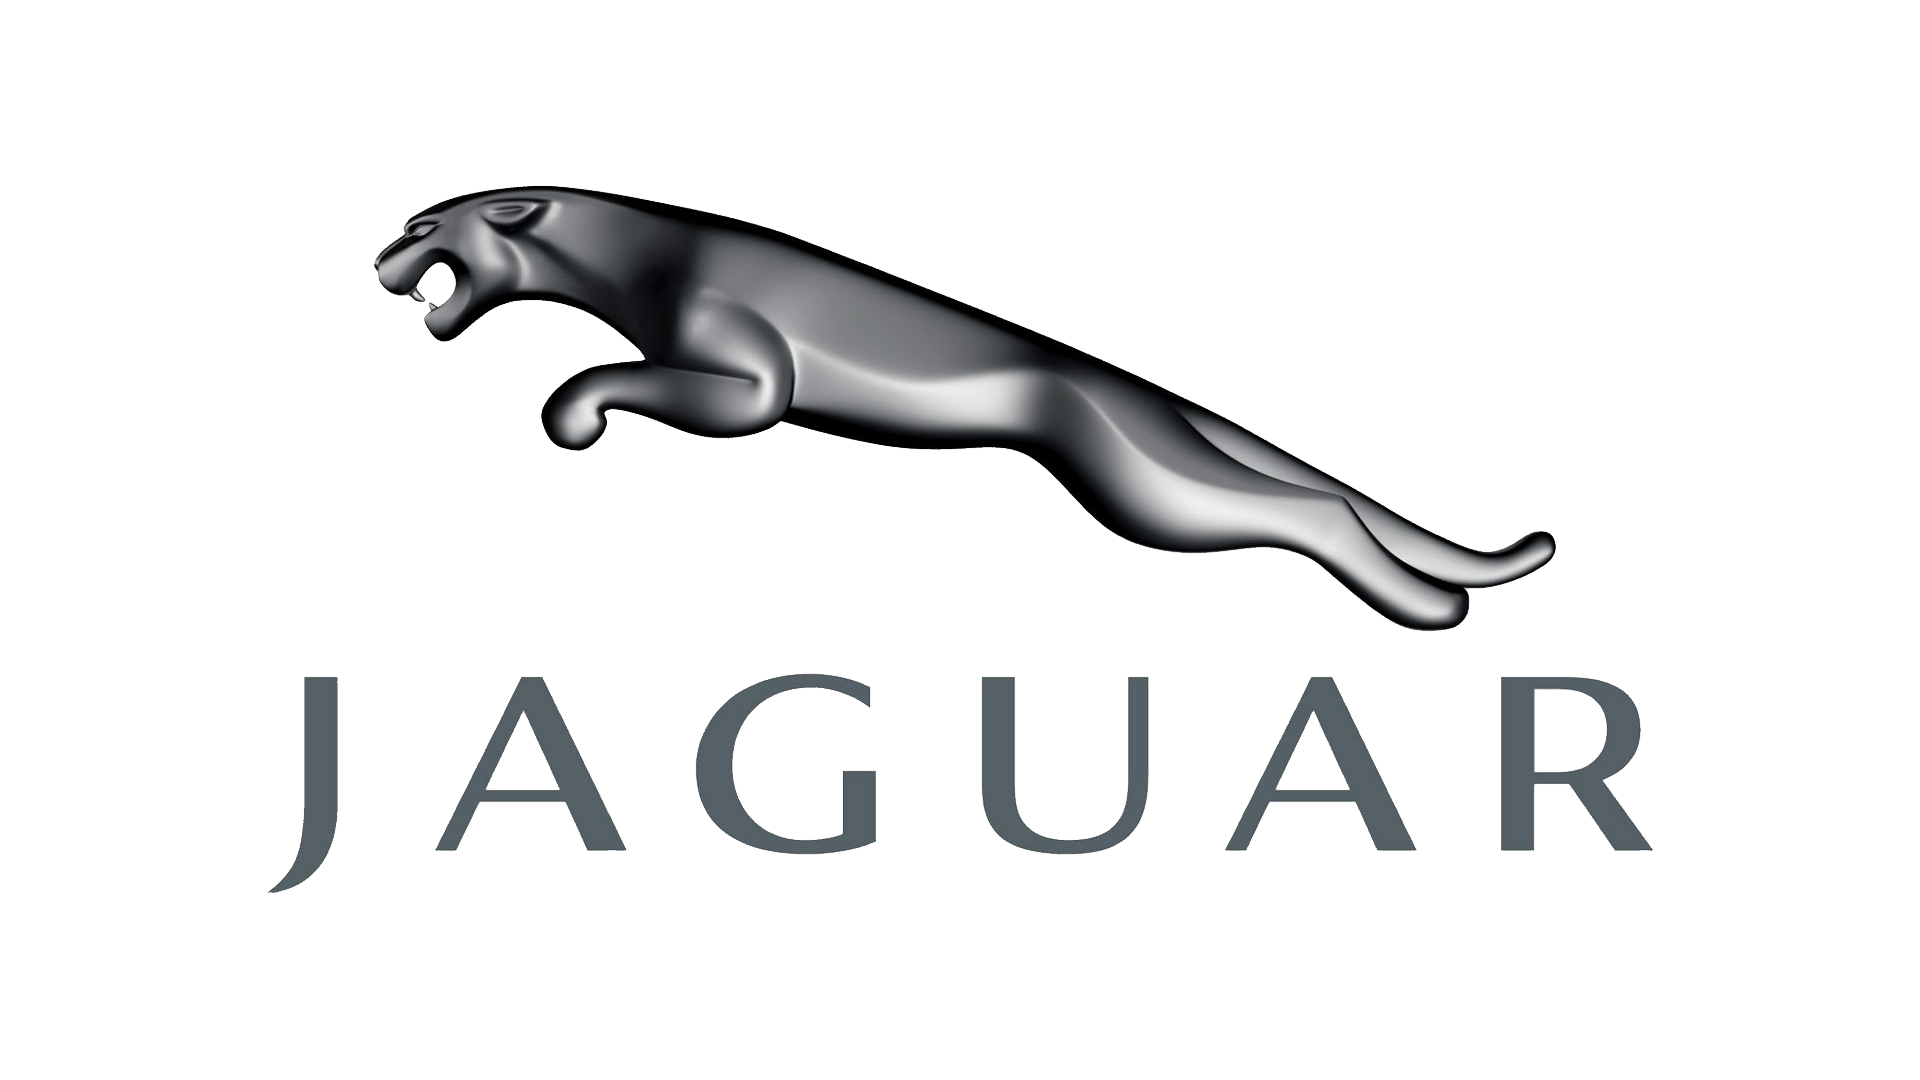 puma vs jaguar logo